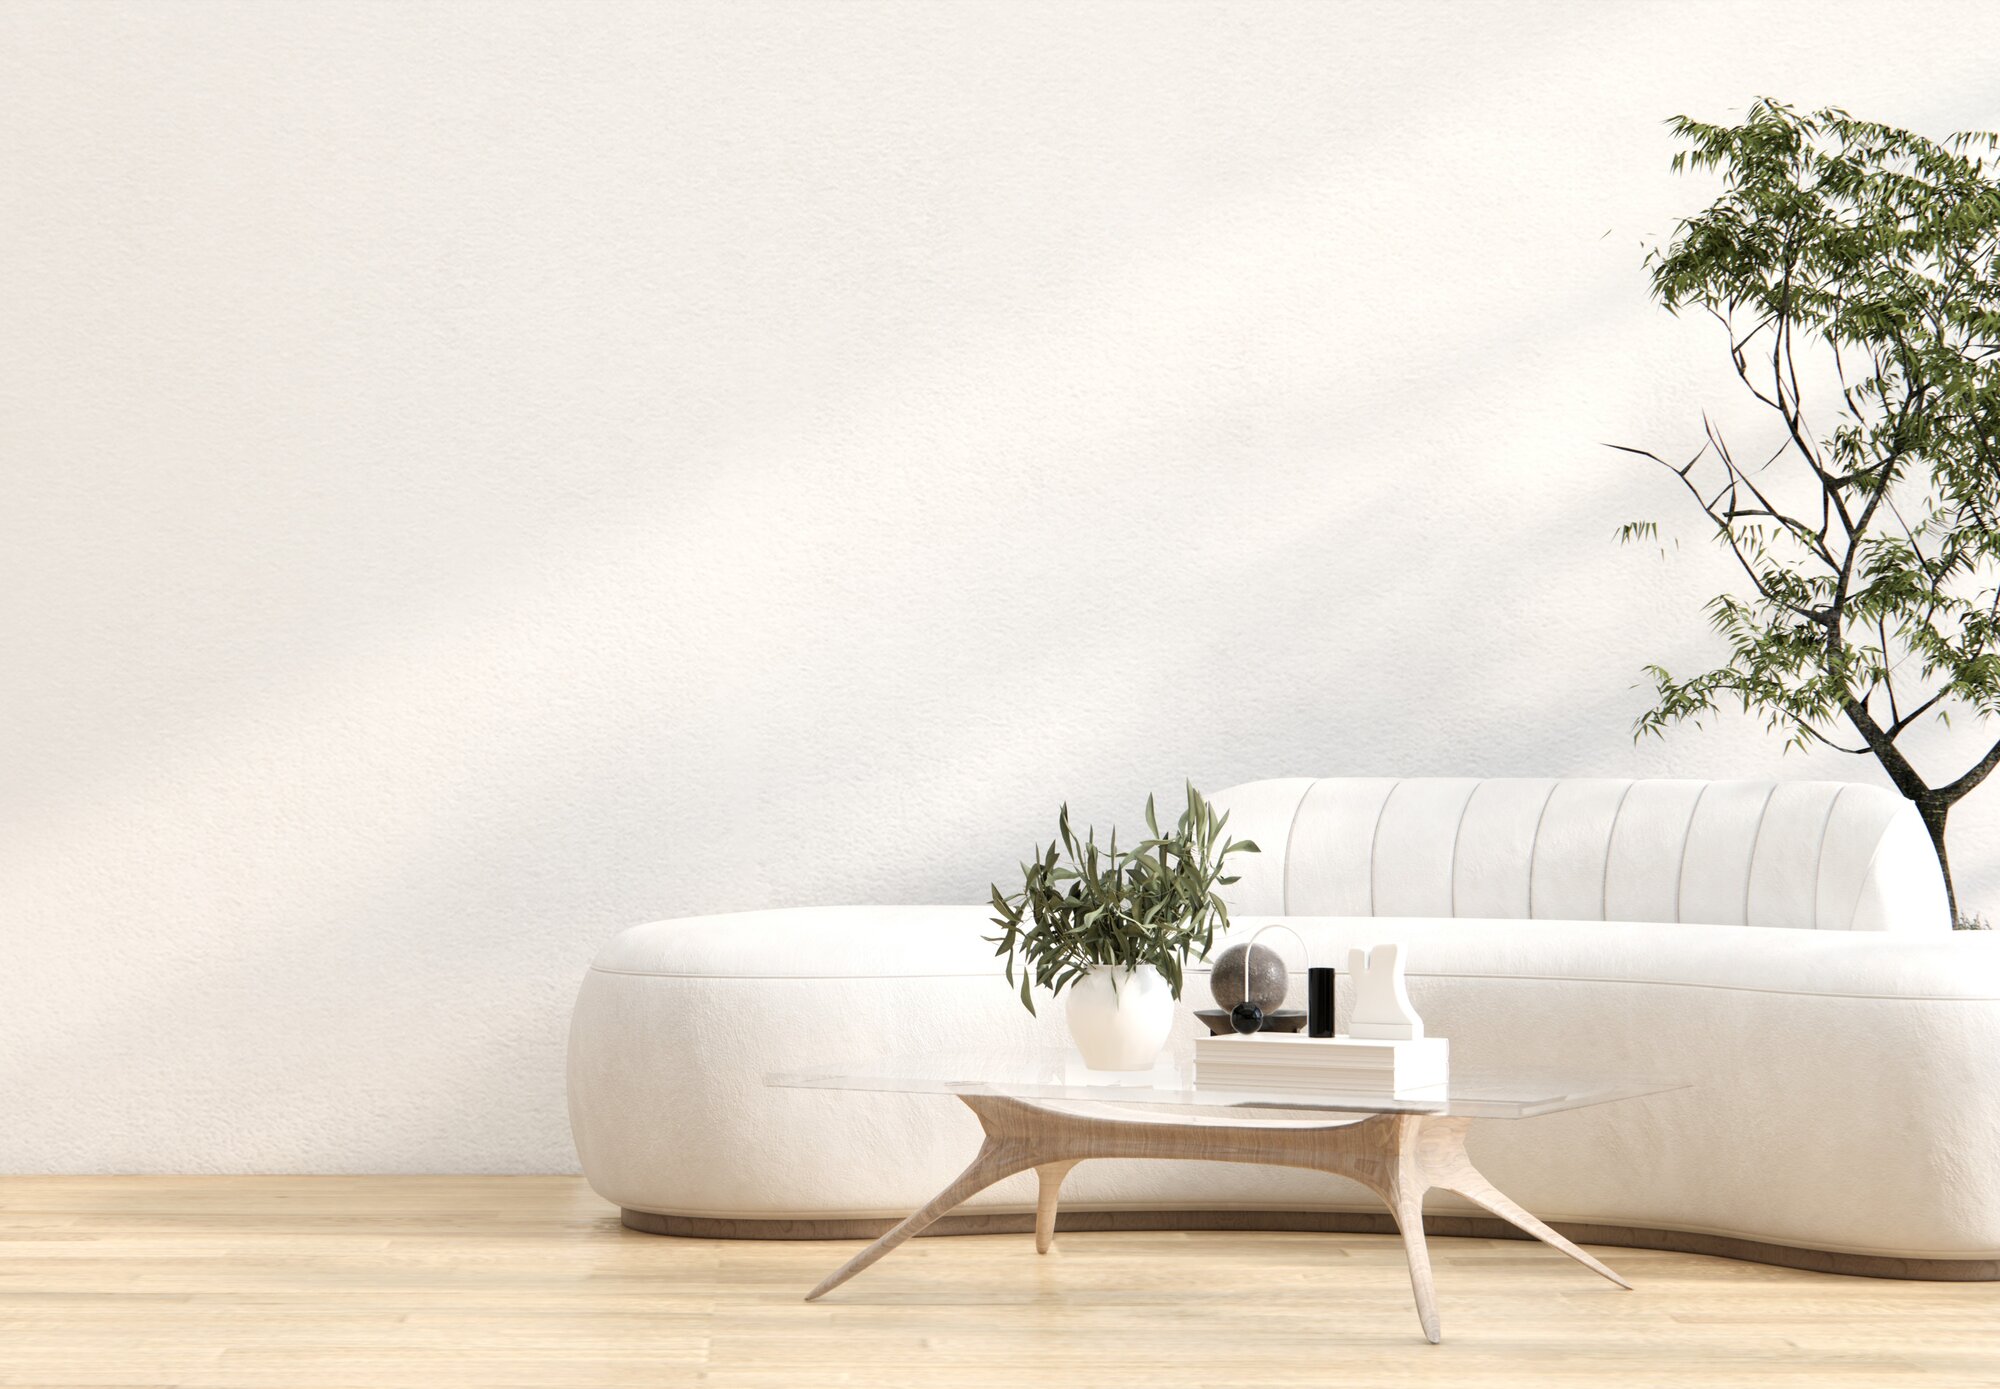 Ausschnitt eines Raums mit Sofa, Pflanzen und Dekoration